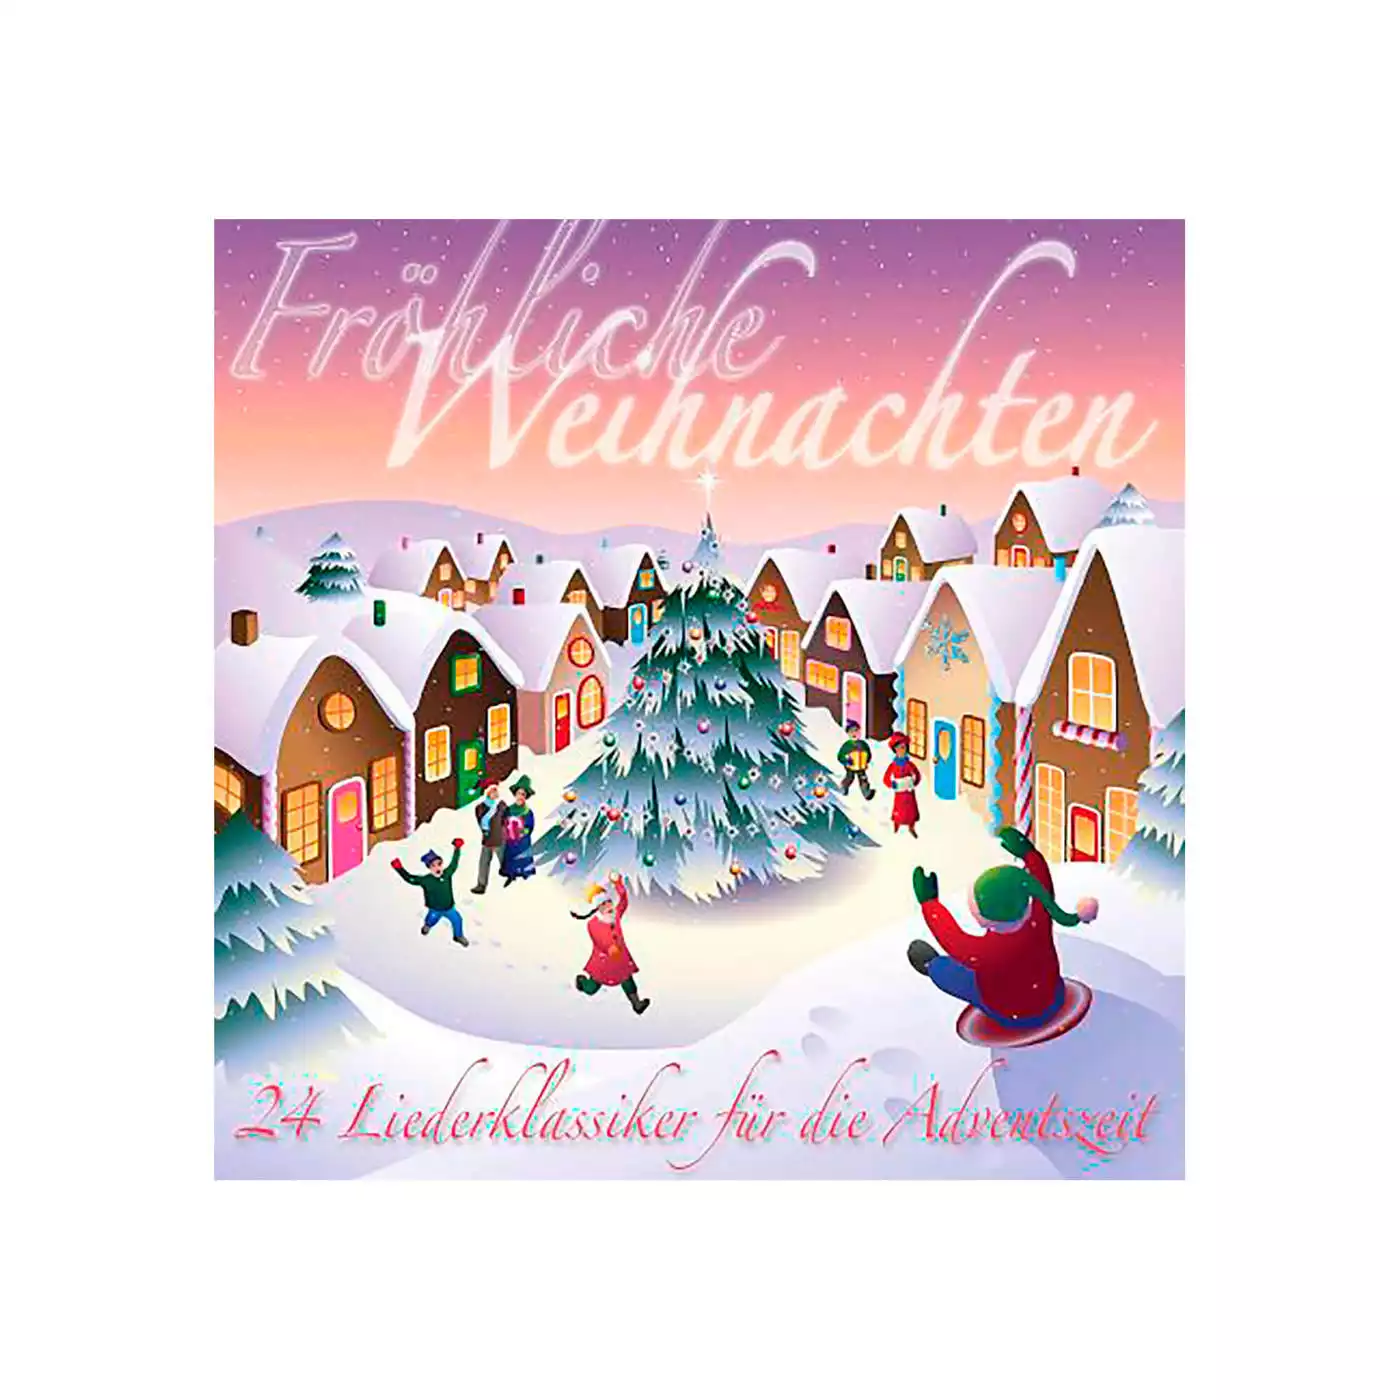 Fröhliche Weihnachten - 24 Liederklassiker 2000570205506 1